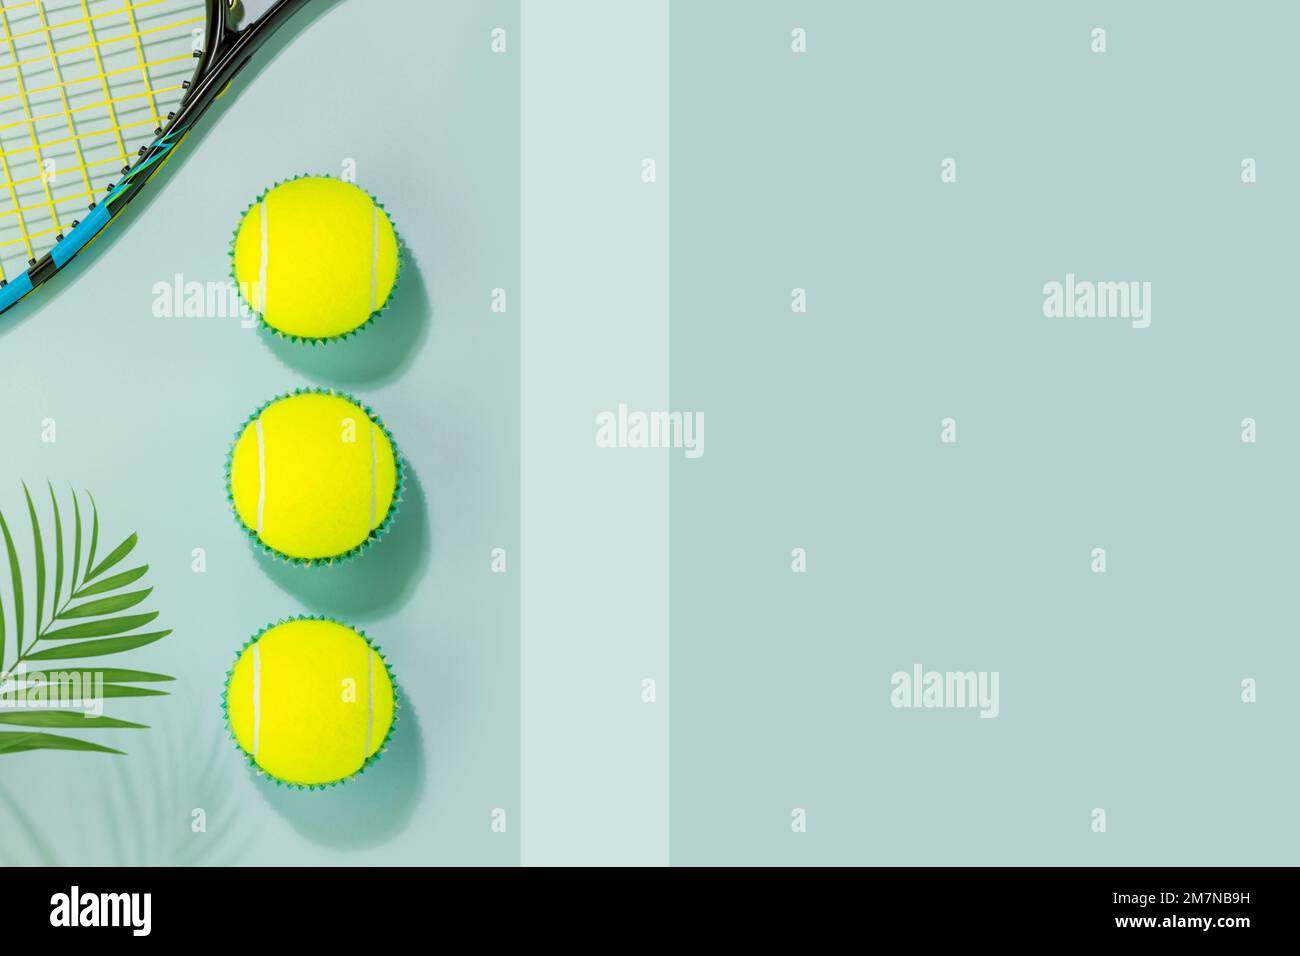 La compétition de tennis est encore la vie. Composition sportive avec balles de tennis jaunes et raquette de tennis sur fond bleu avec feuilles de palmier et ombres. S Banque D'Images